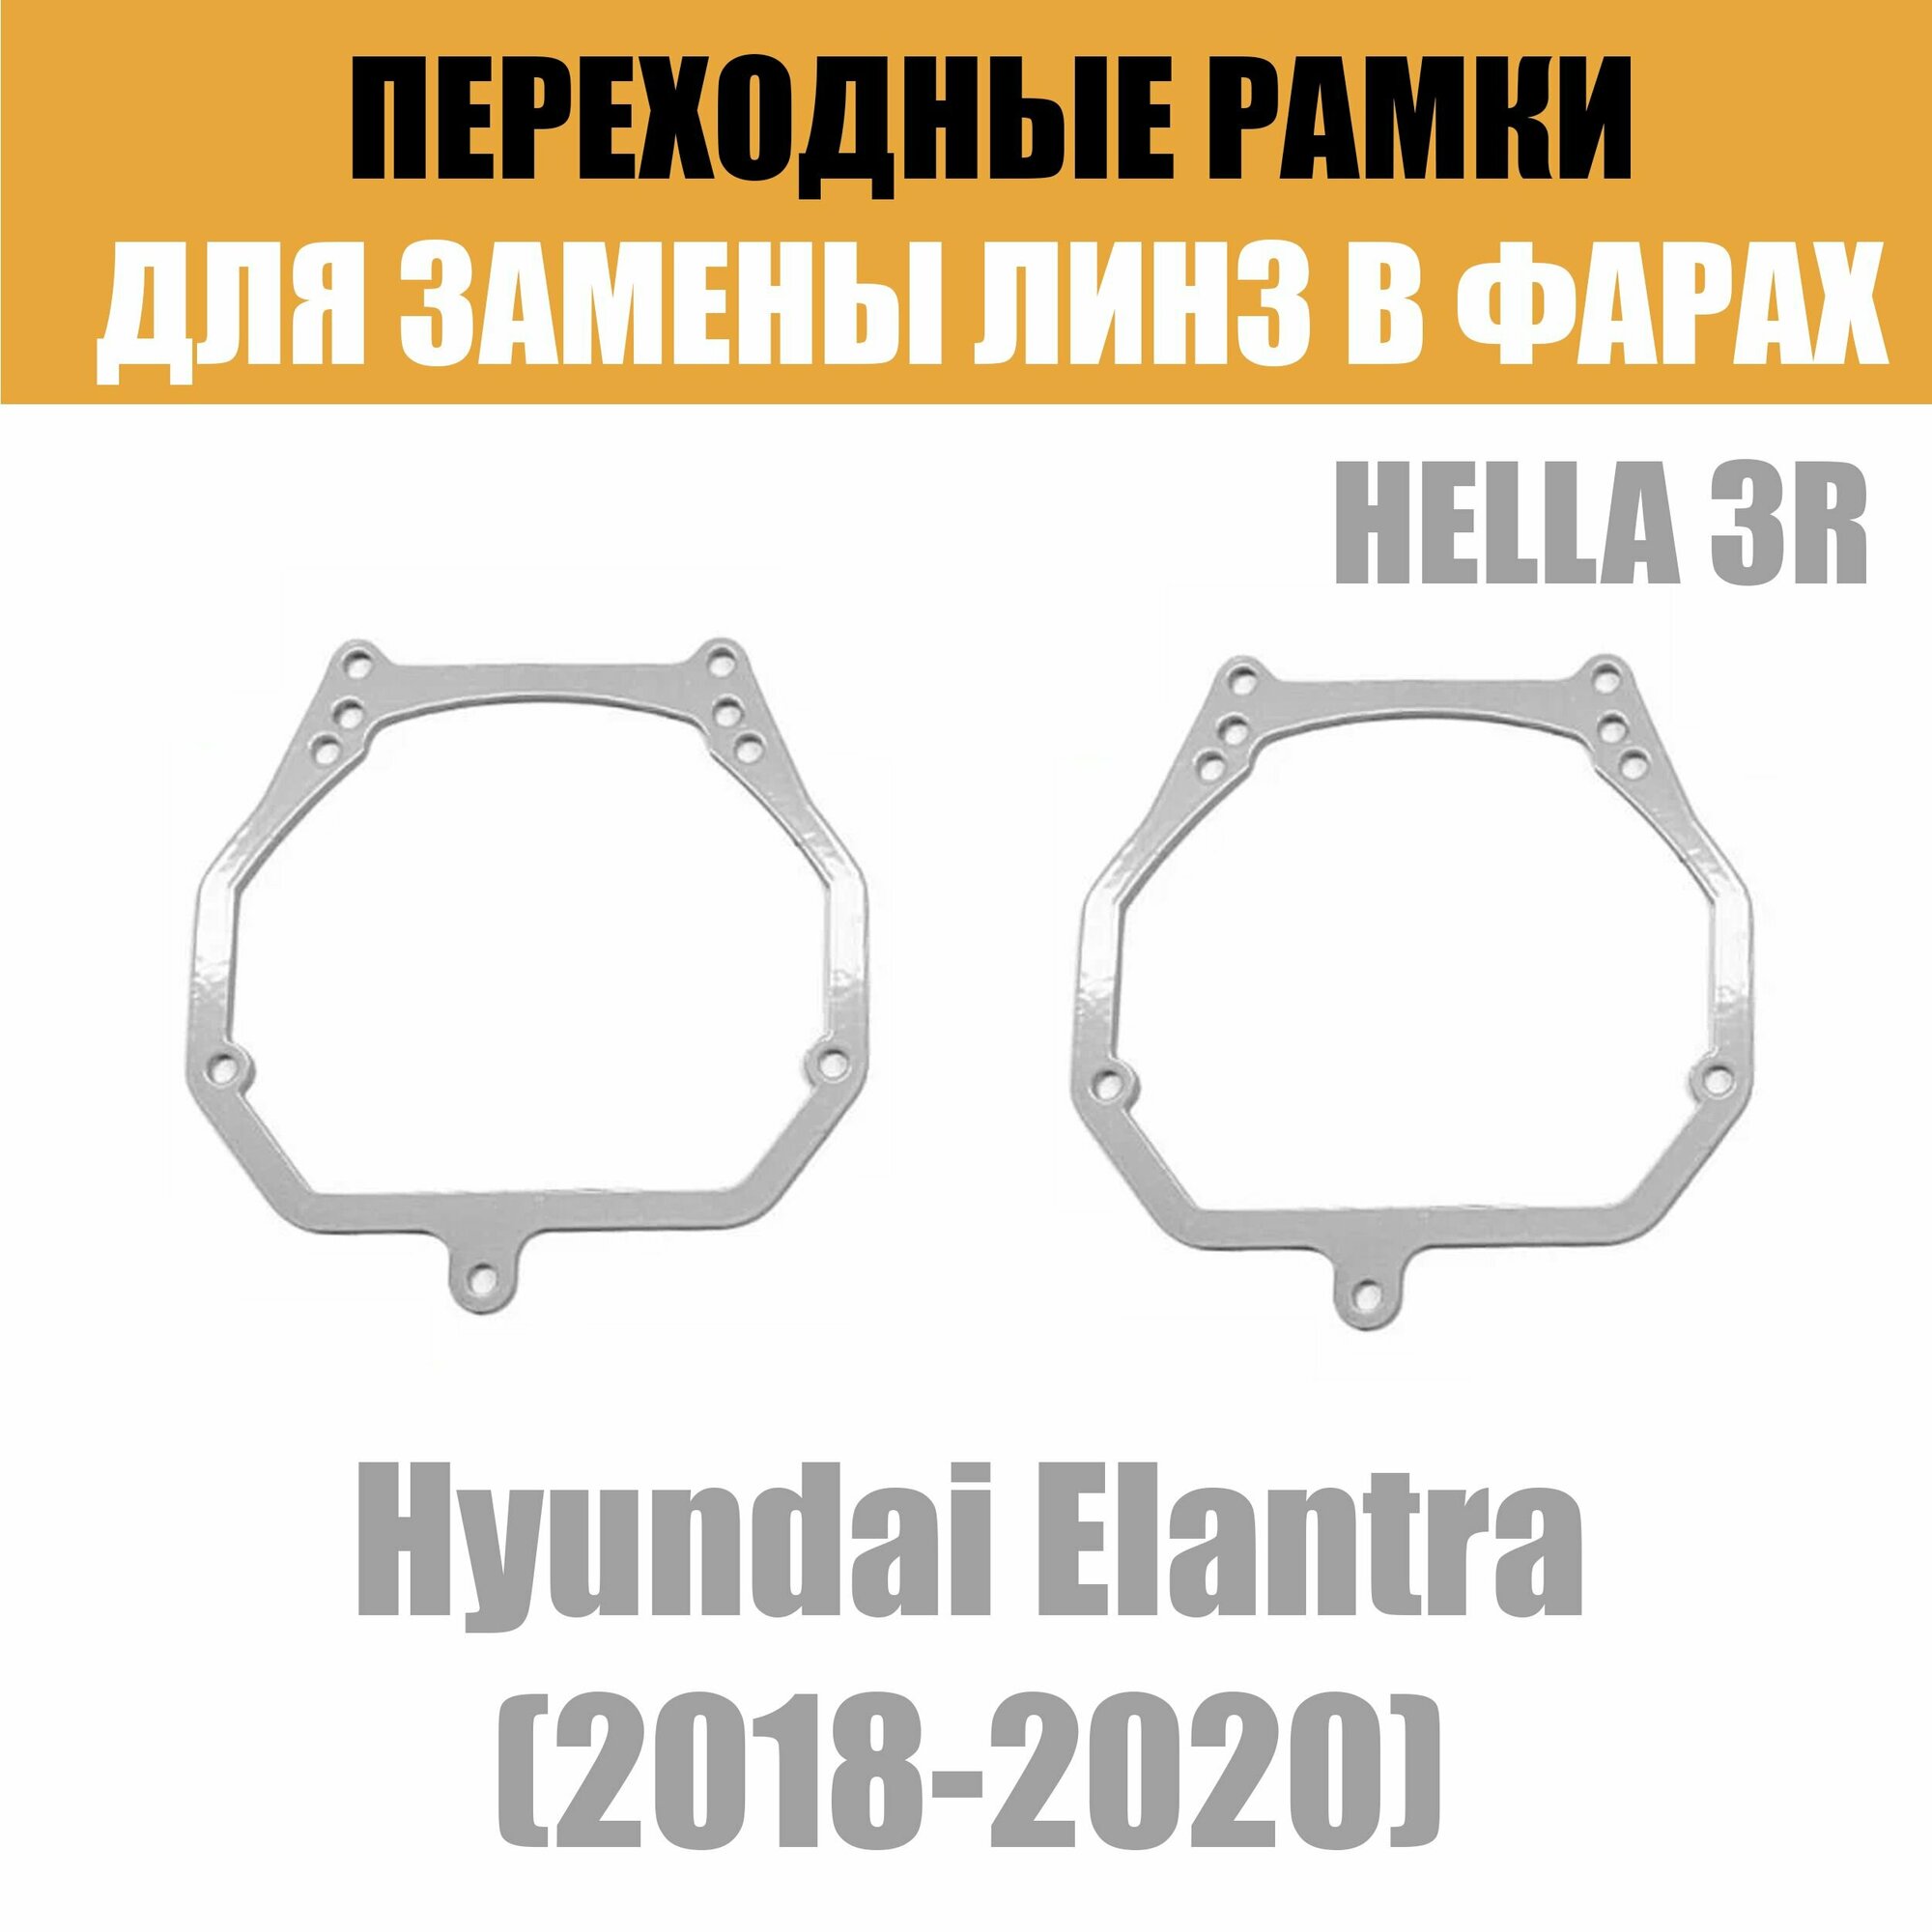 Переходные рамки для линз №2 на Hyundai Elantra (2018-2020) под модуль Hella 3R/Hella 3 (Комплект 2шт)